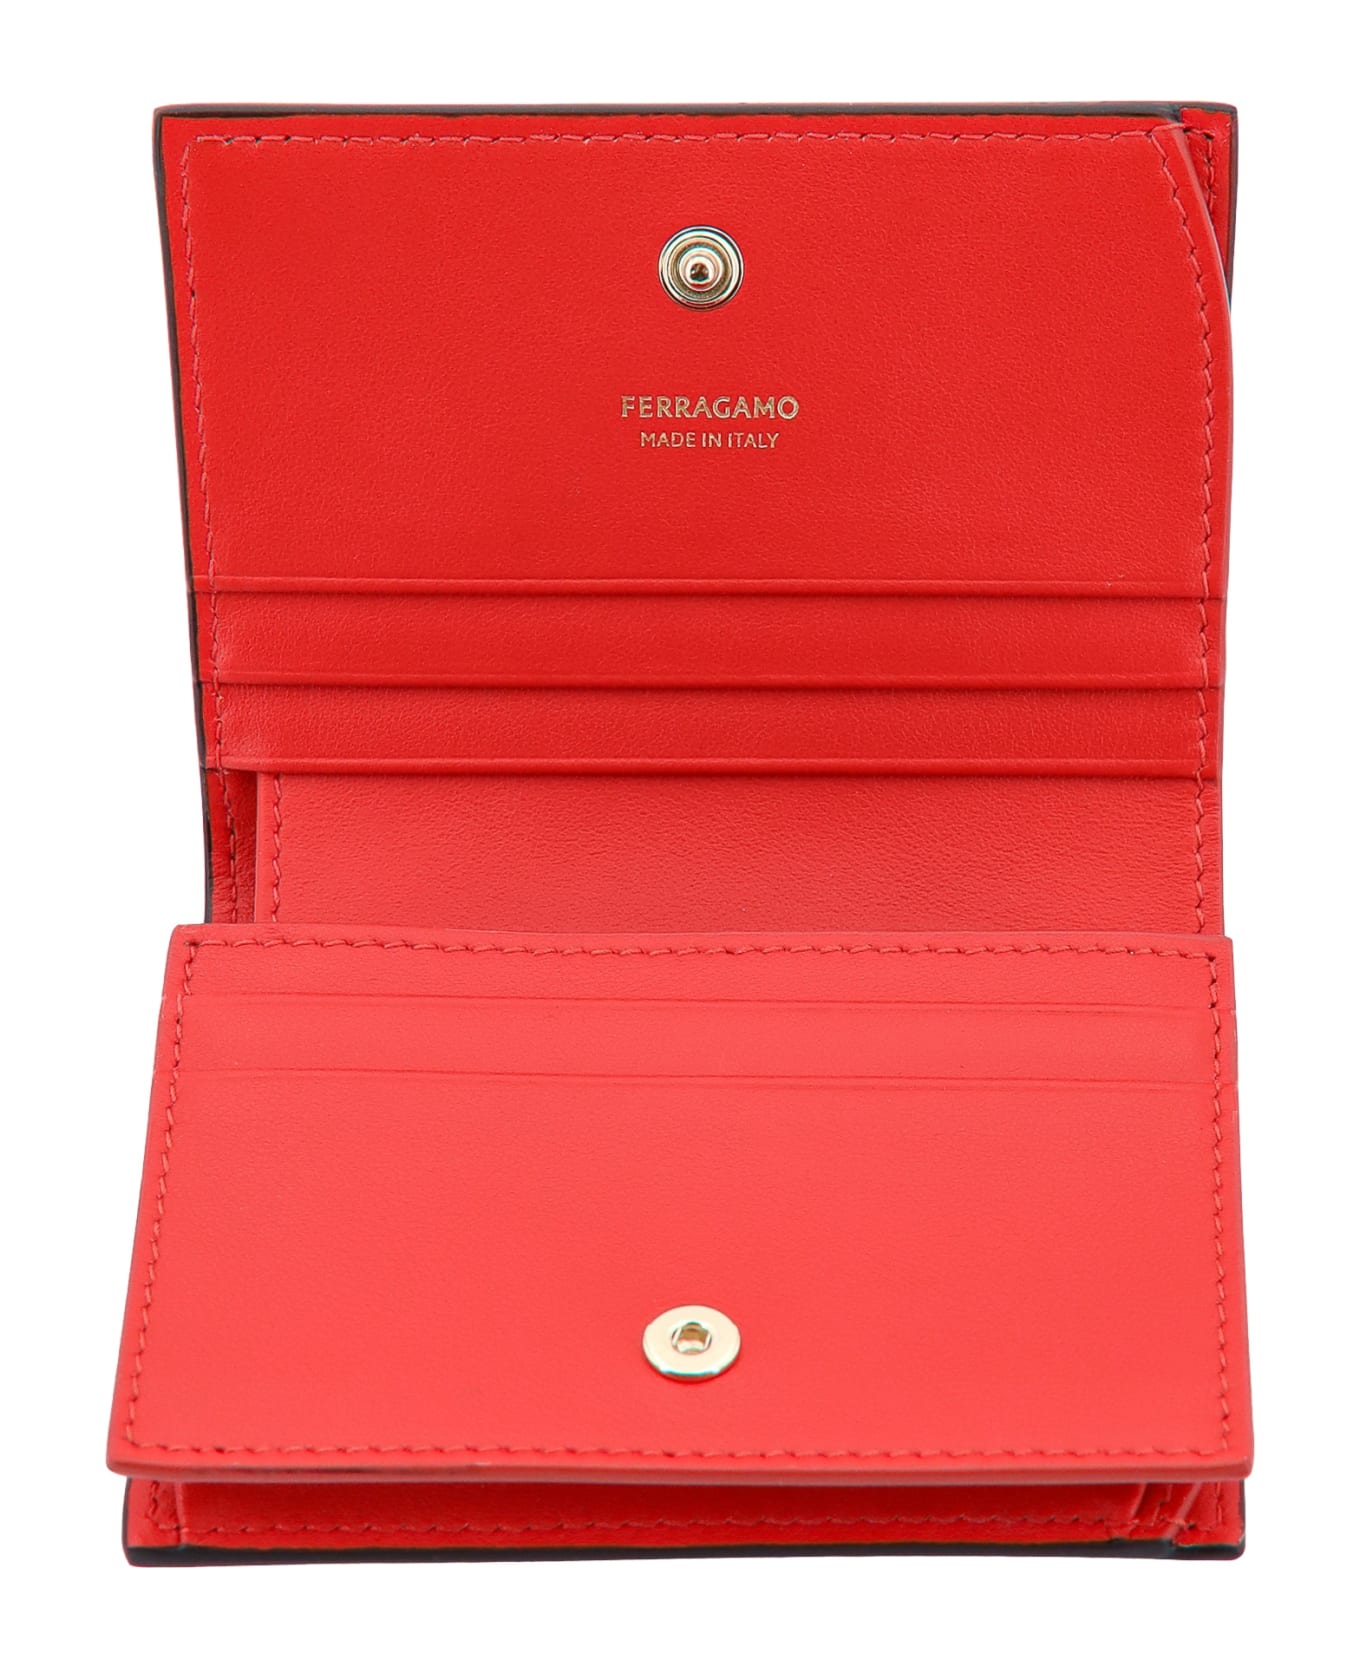 Ferragamo Wallet - Nero 財布